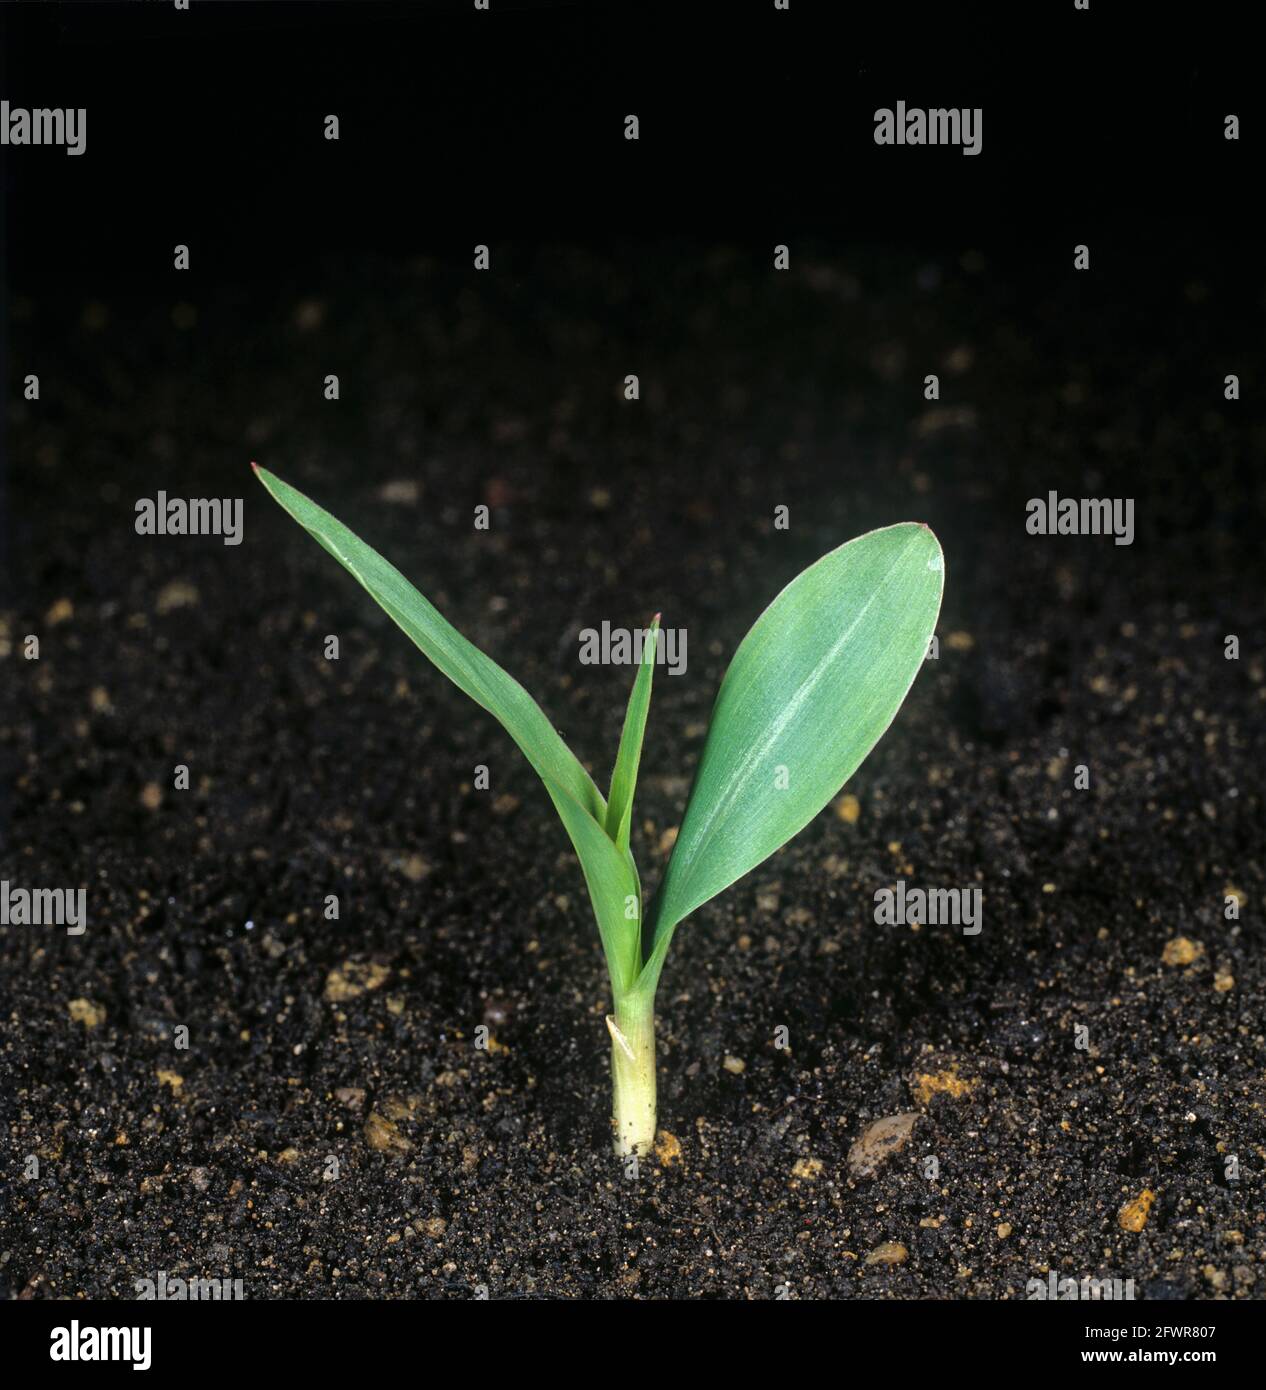 Mais-, Mais- oder Zuckermais (Zea mays)-Sämling mit Koleoptil oder Stachel, erstes Blatt und zweites nur in der Entwicklung Stockfoto